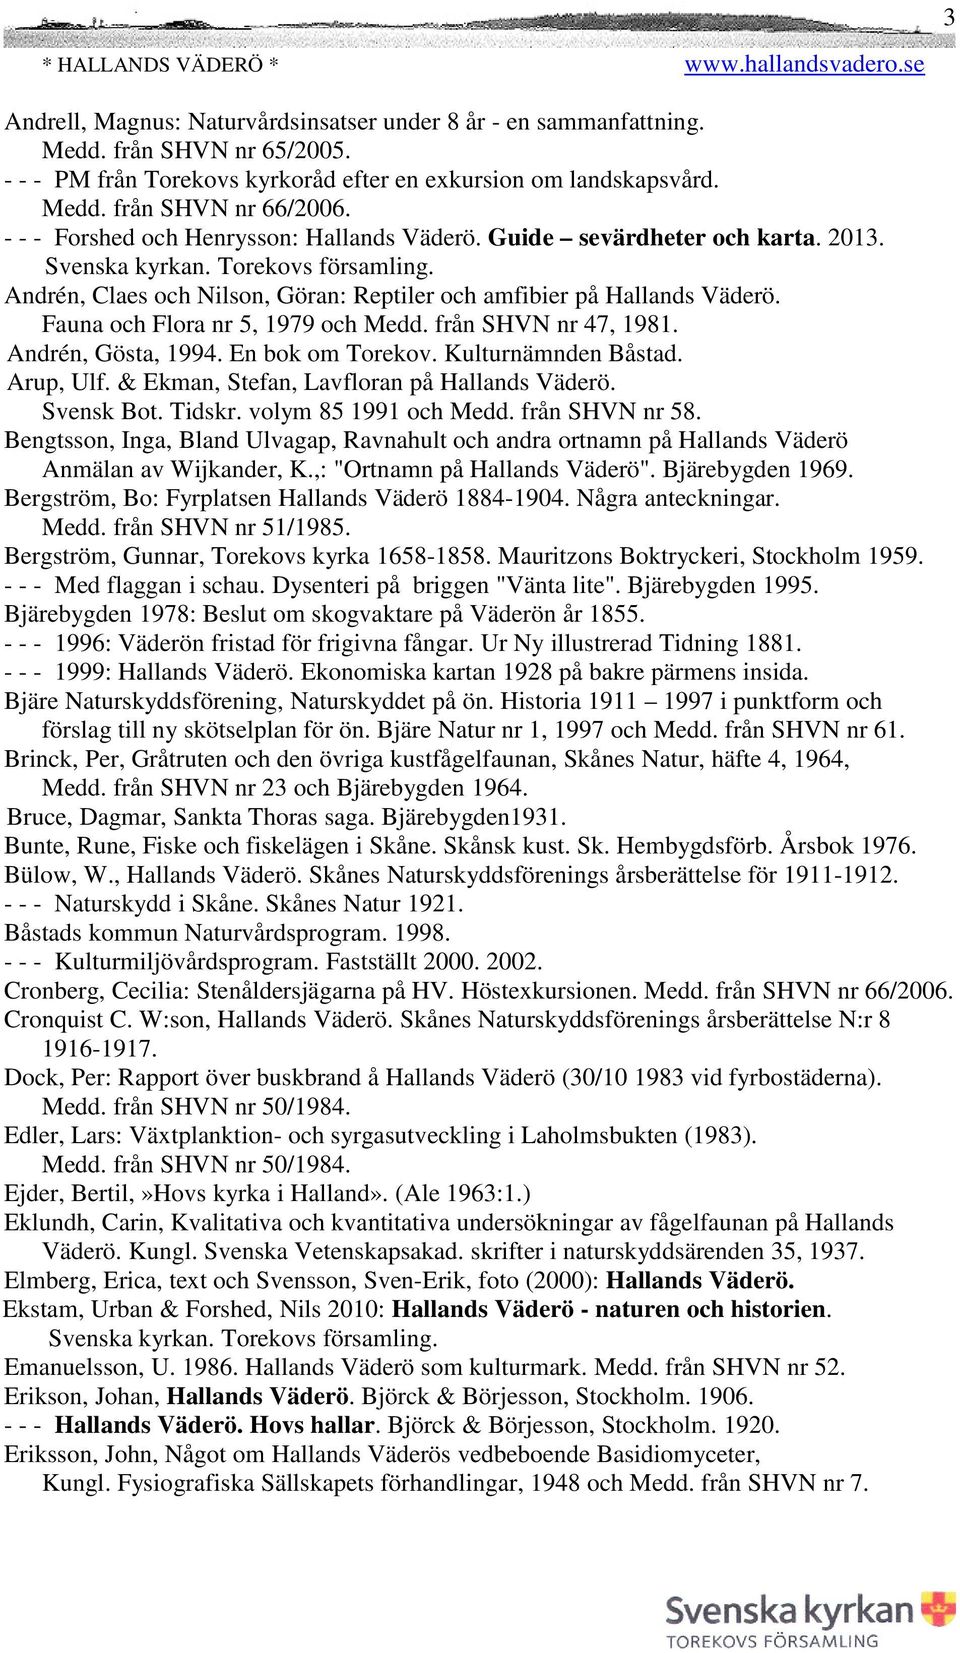 Fauna och Flora nr 5, 1979 och Medd. från SHVN nr 47, 1981. Andrén, Gösta, 1994. En bok om Torekov. Kulturnämnden Båstad. Arup, Ulf. & Ekman, Stefan, Lavfloran på Hallands Väderö. Svensk Bot. Tidskr.